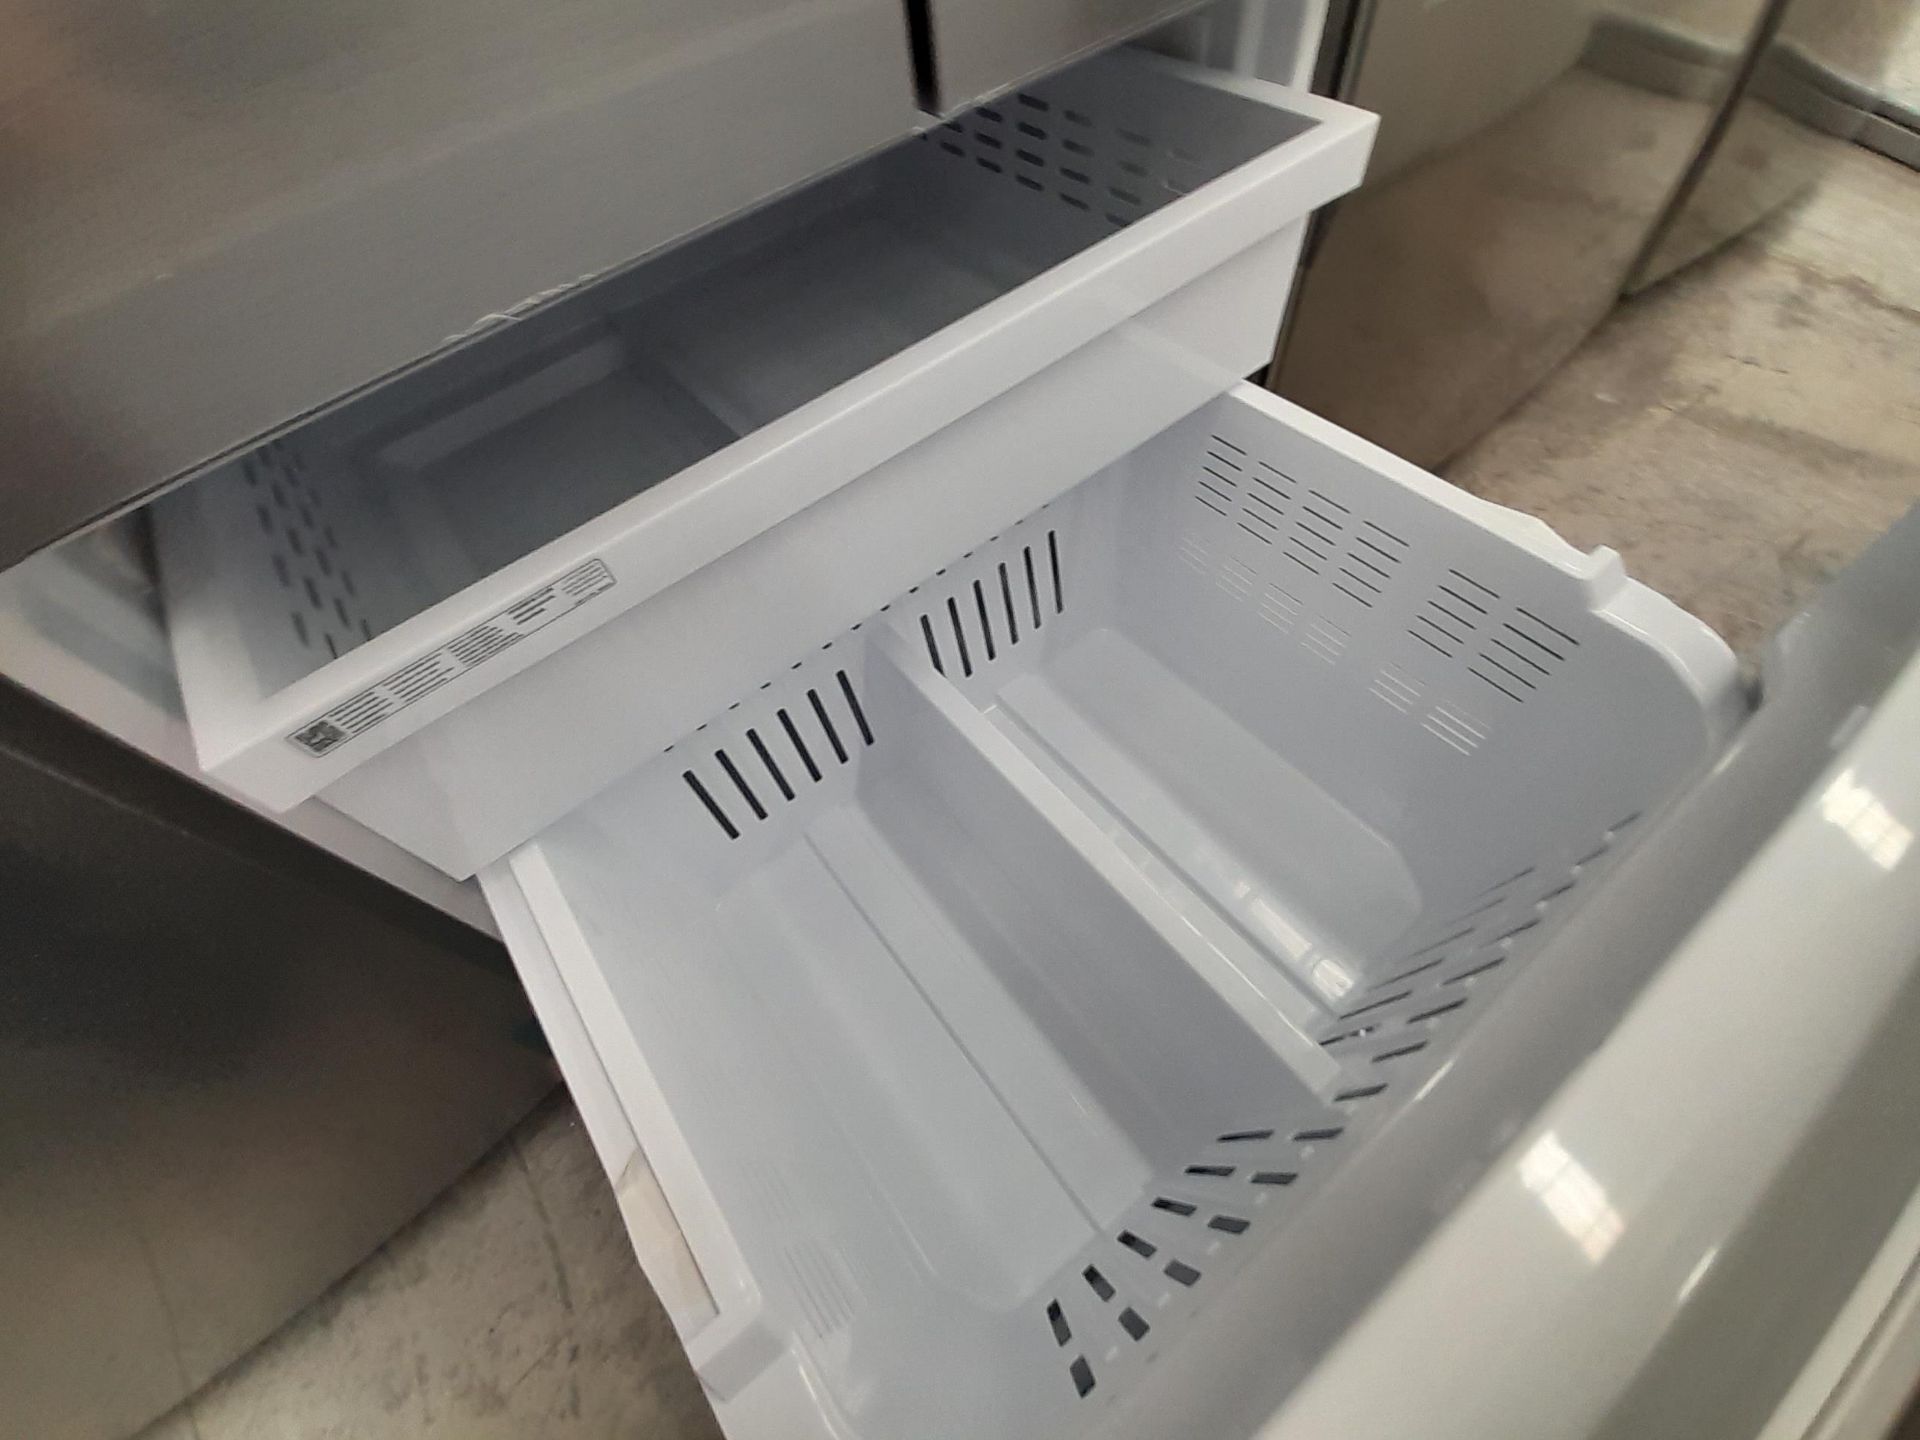 (Equipo nuevo) 1 Refrigerador Marca SAMSUNG, Modelo RF22A4010S9, Serie 00017R, Color GRIS. (Nuevo, - Image 5 of 6